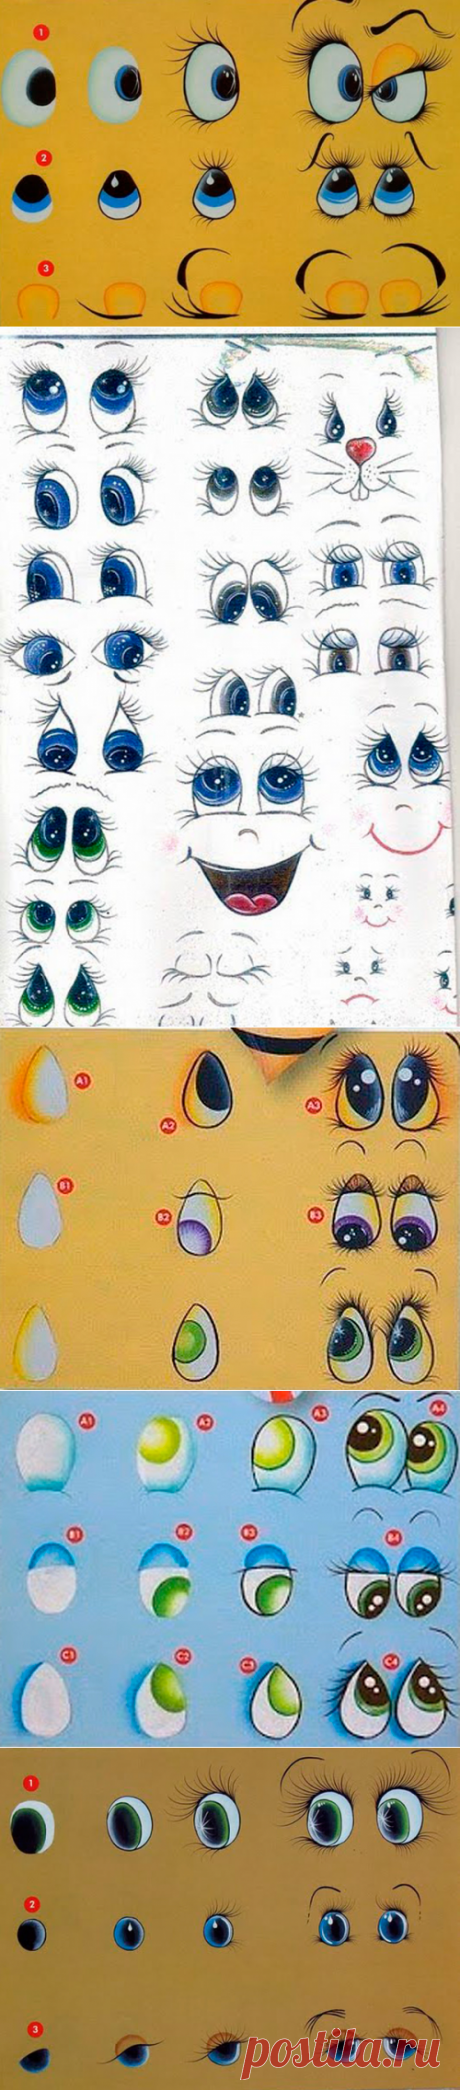 12 схем прорисовки глаз и глазок - Сам себе волшебник